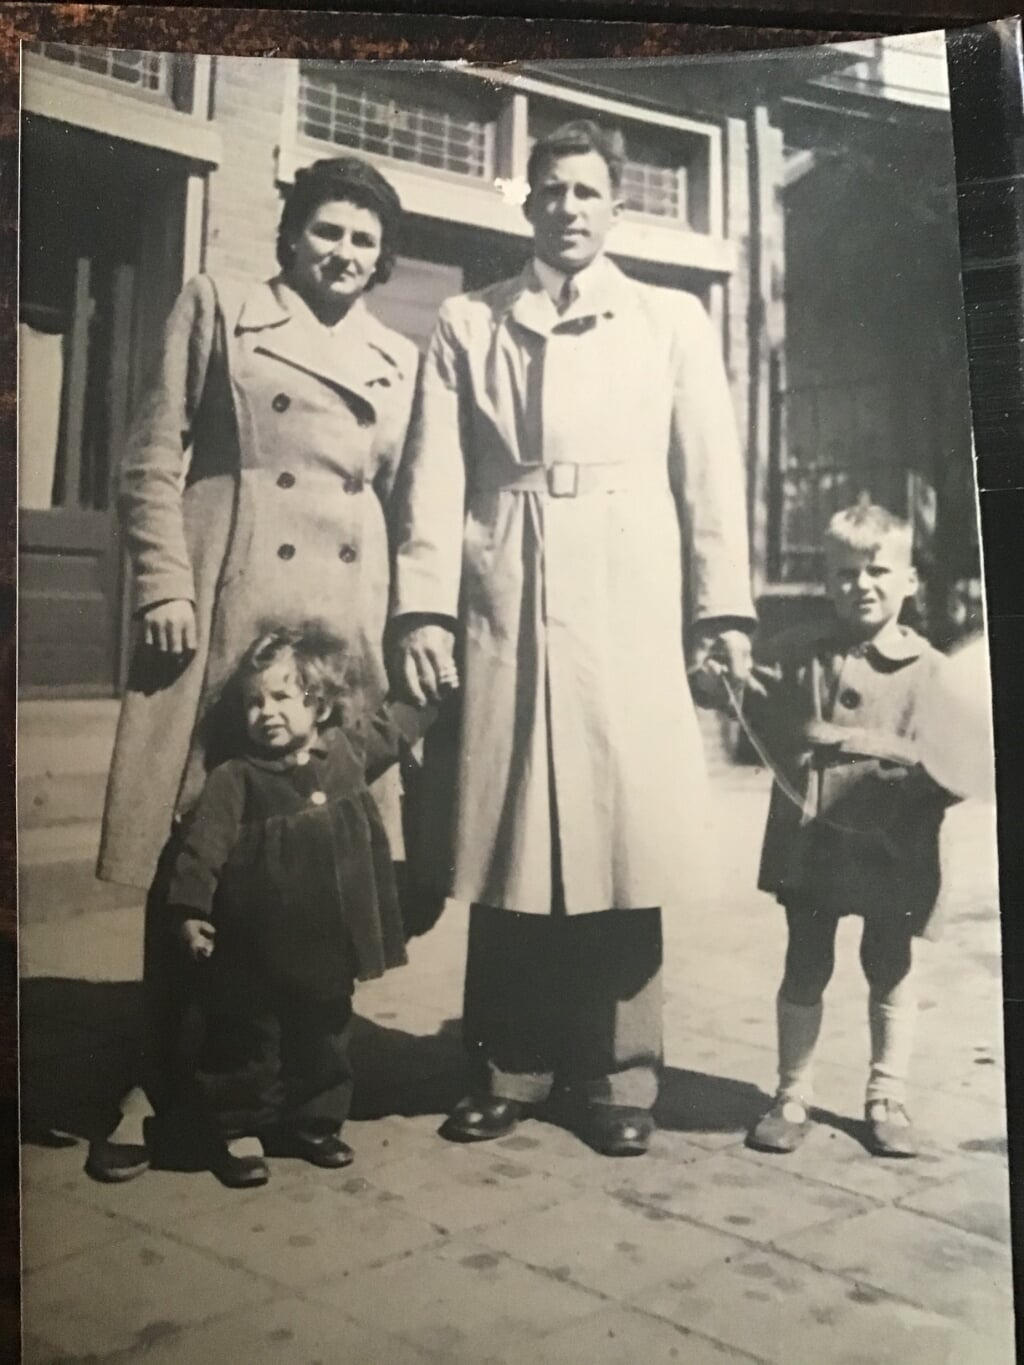 Meneer en mevrouw Keijzer met hun dochter Gonny en zoon Hans.
Eigen foto